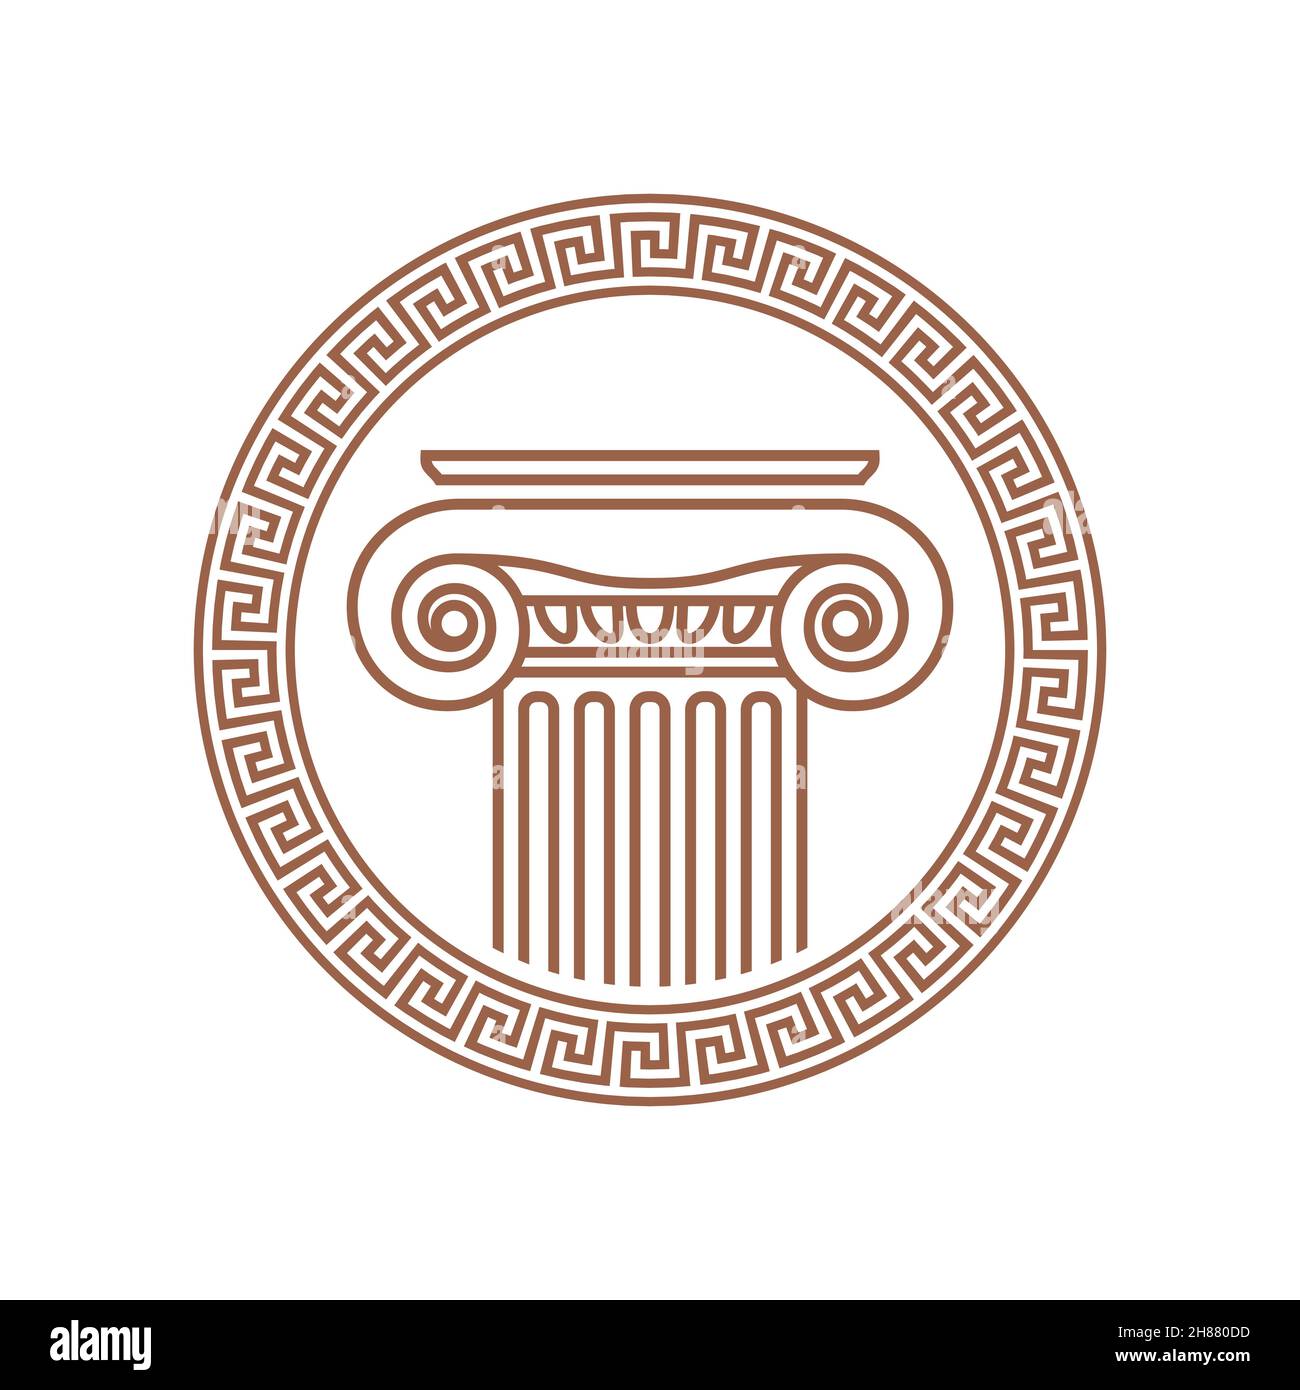 Immagine vettoriale di una antica colonna romana incorniciata da ornamento romano Illustrazione Vettoriale